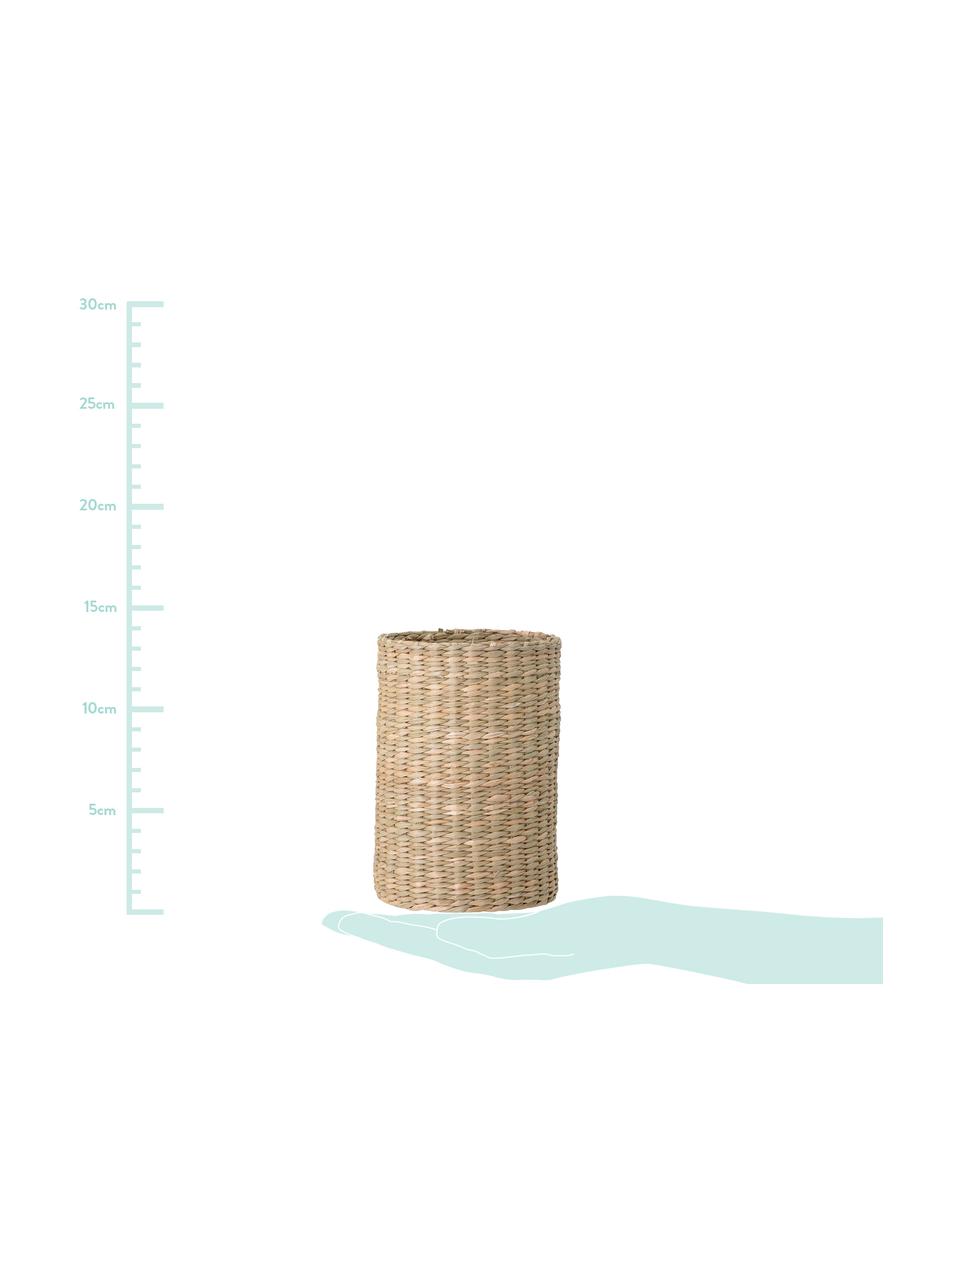 Flaschenhalter Basket aus Seegras, 2er-Set, Seegras, Beige, Set mit verschiedenen Größen